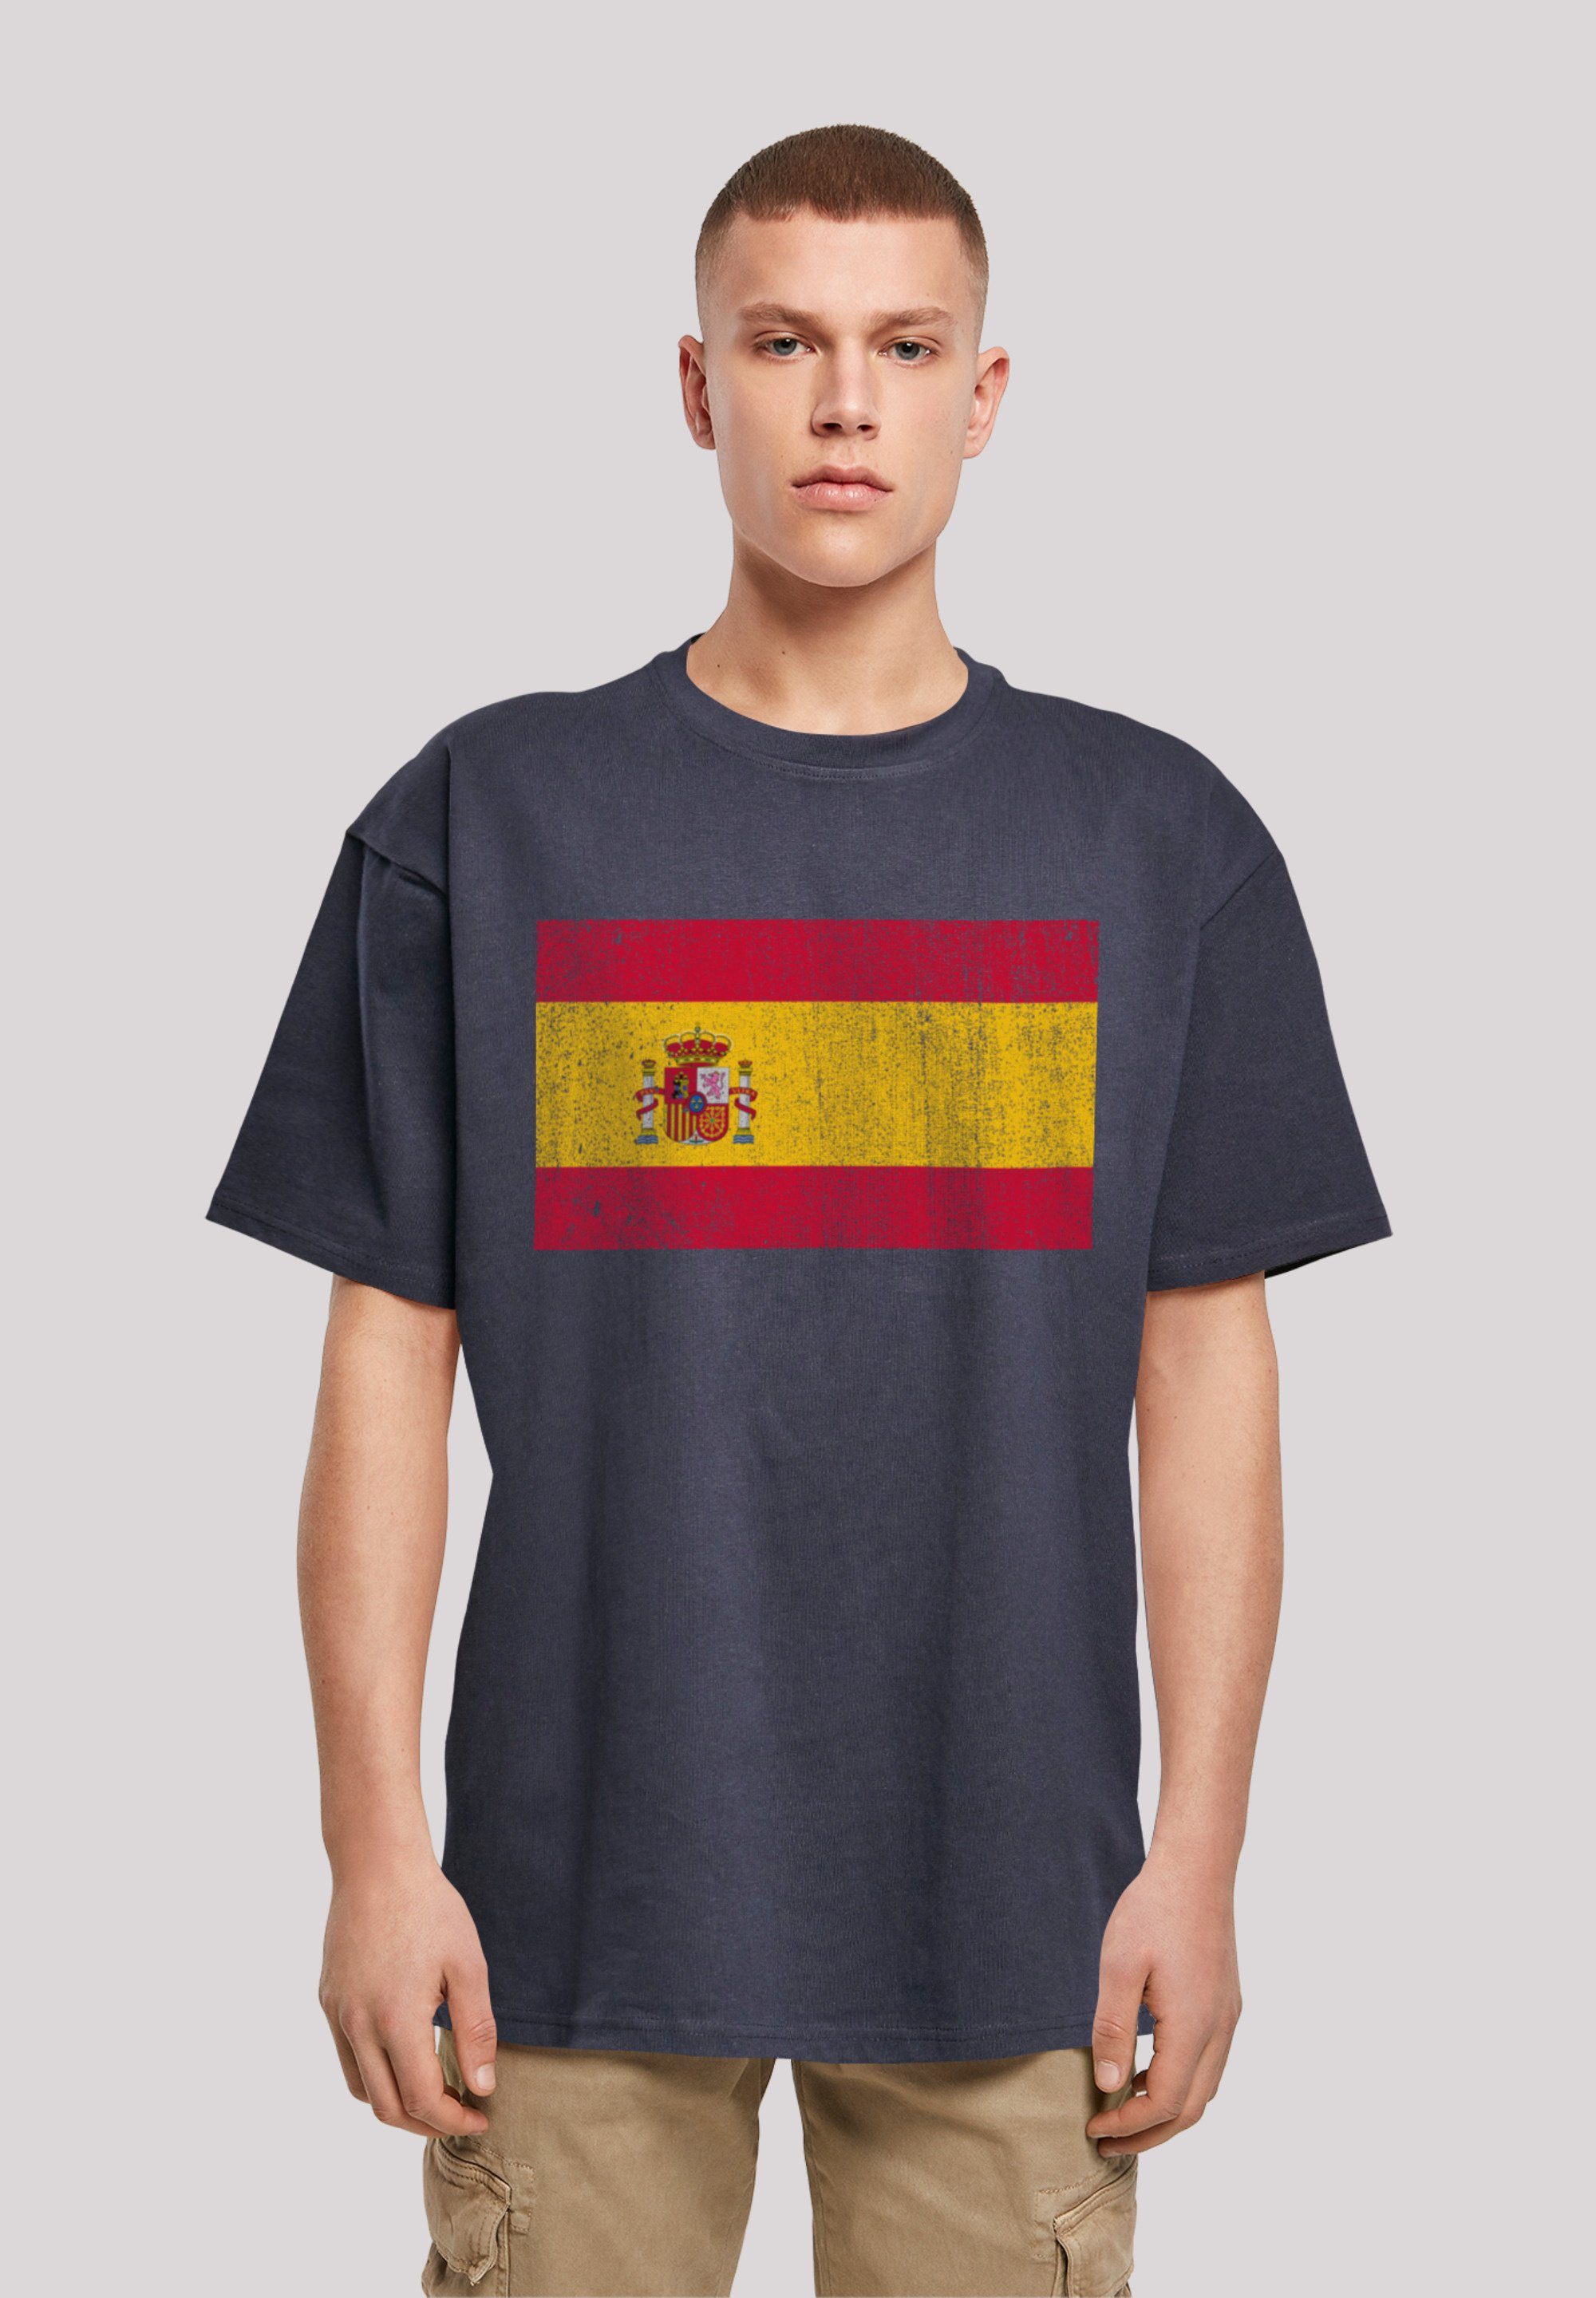 T-Shirt Passform und distressed Spanien Flagge Spain Print, überschnittene Weite Schultern F4NT4STIC